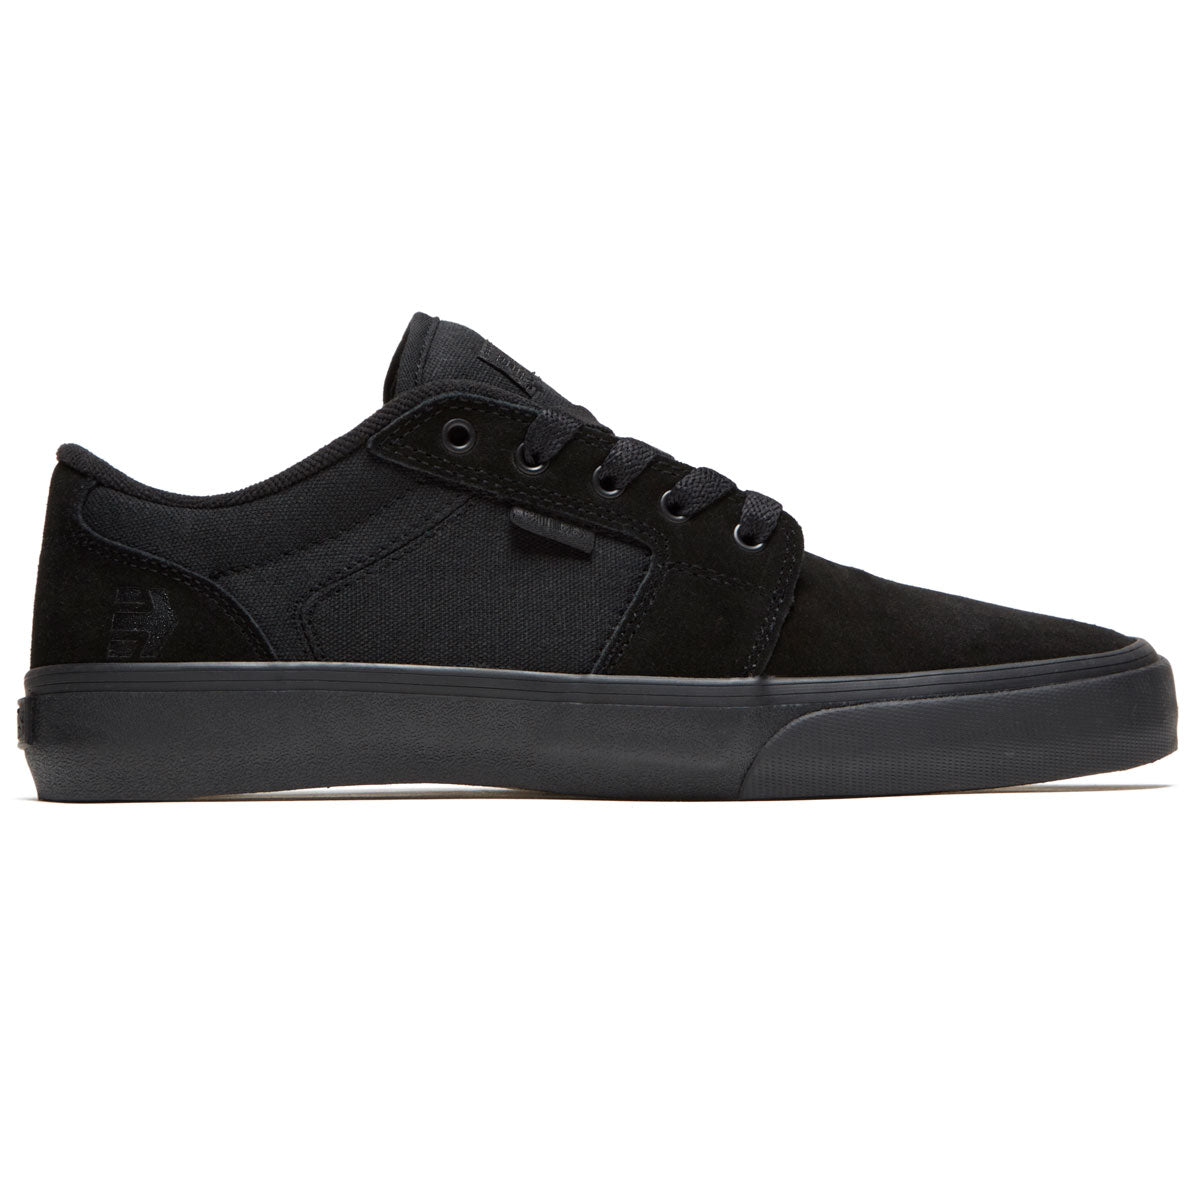 Etnies Barge Ls Shoes - Black/Black/Black image 1